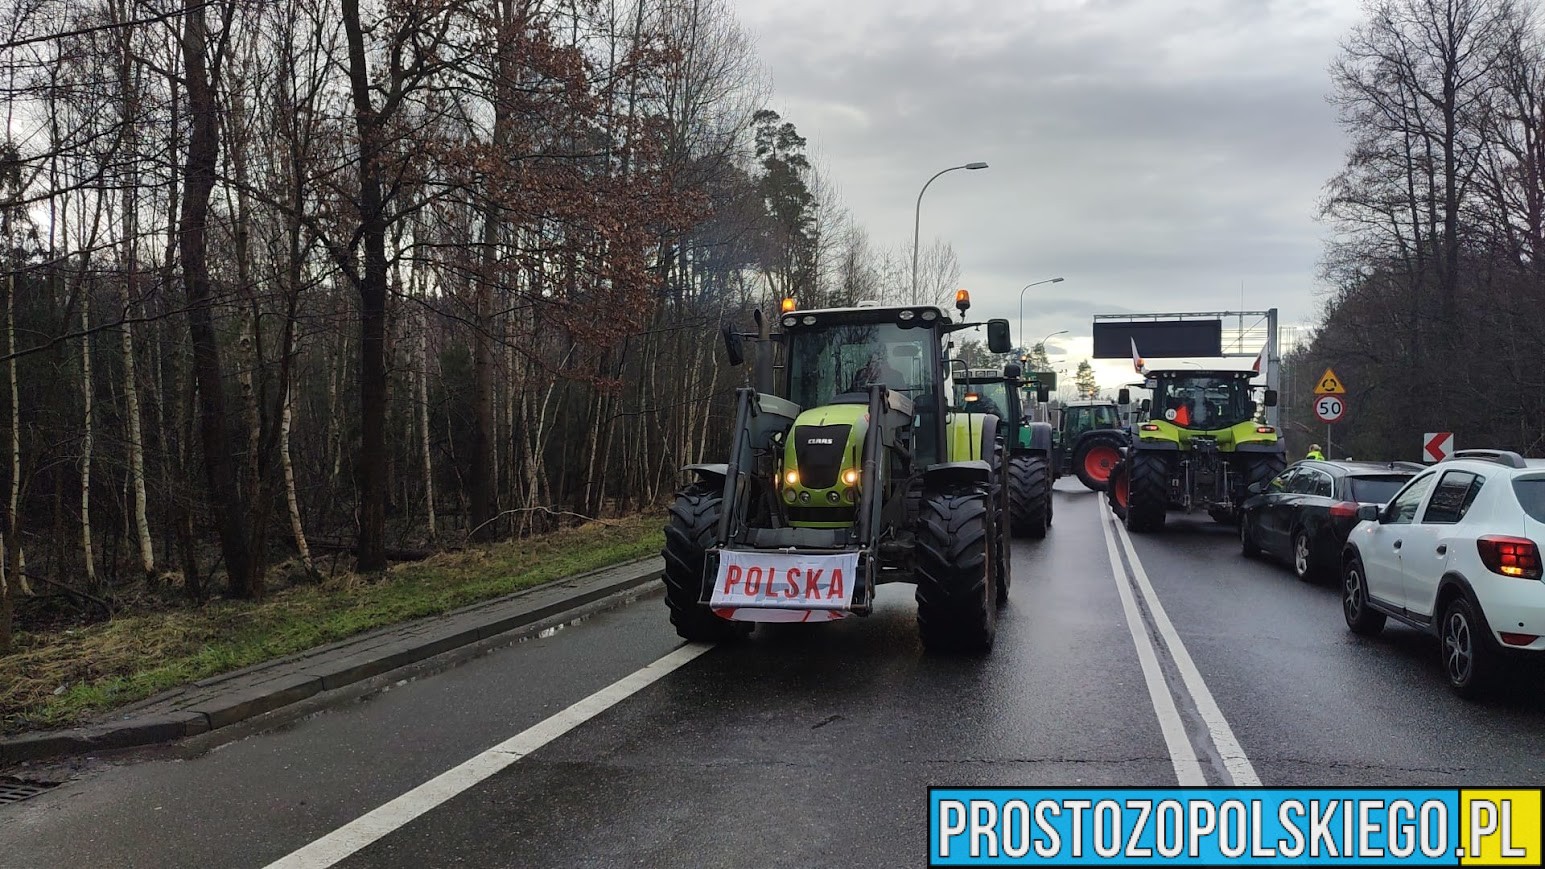 protest rolników, blokada na drogach, prostozopolskiego,